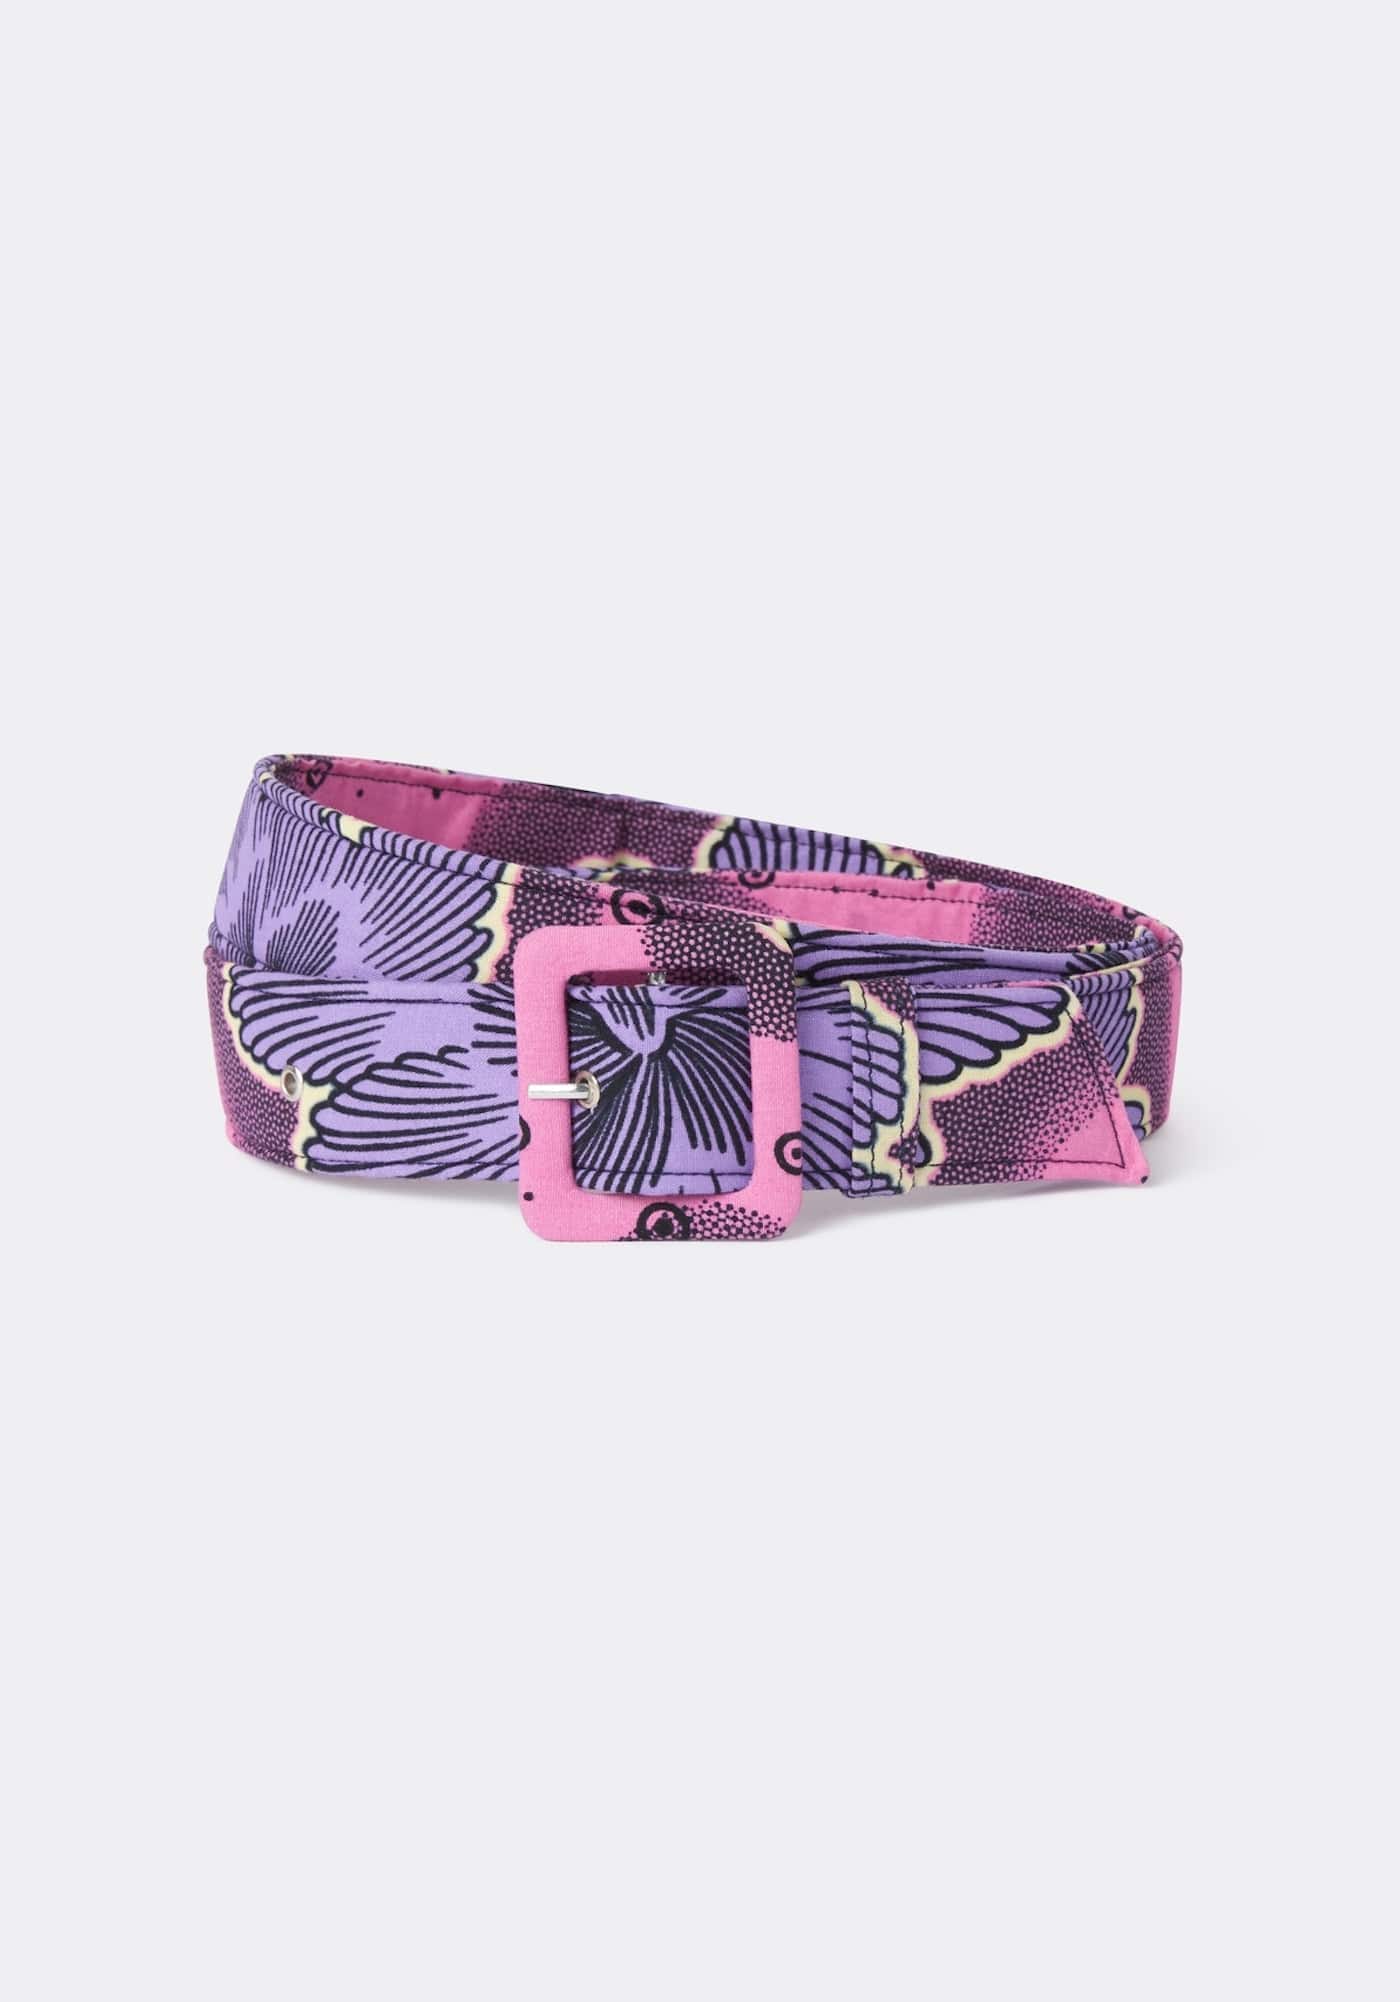 YEVU Accessories - Belts Standard Belt - Purple Flowers